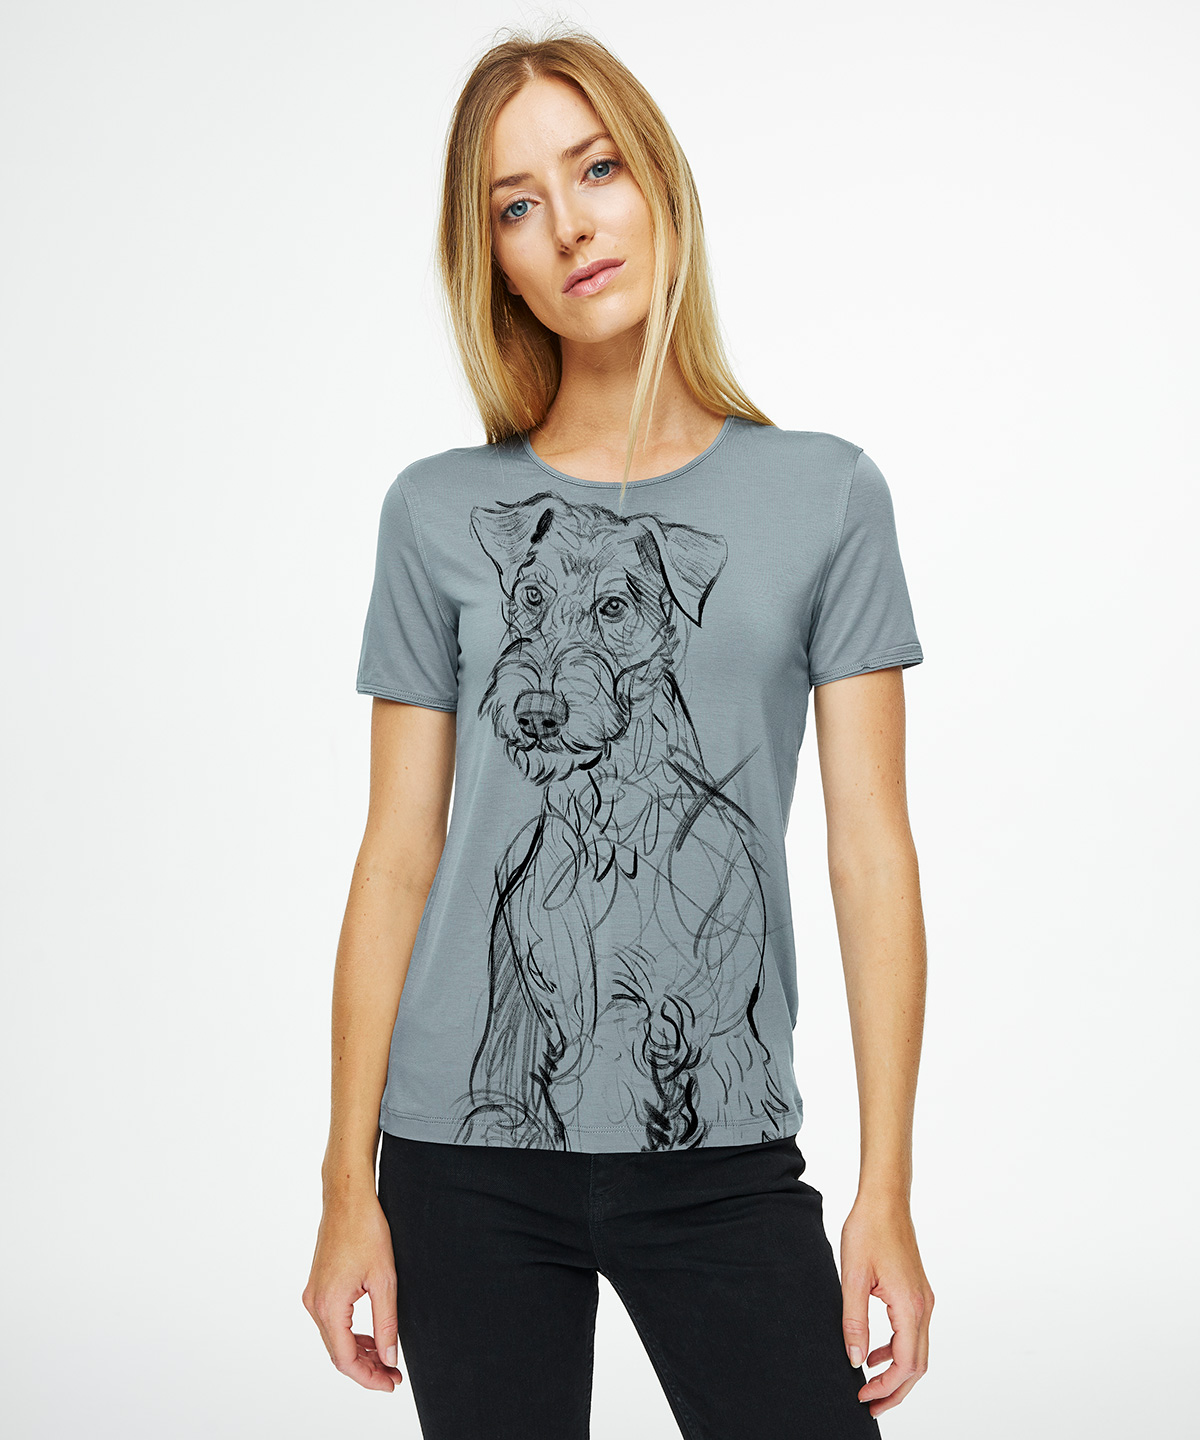 Airedale terrier storm cloud t-shirt woman